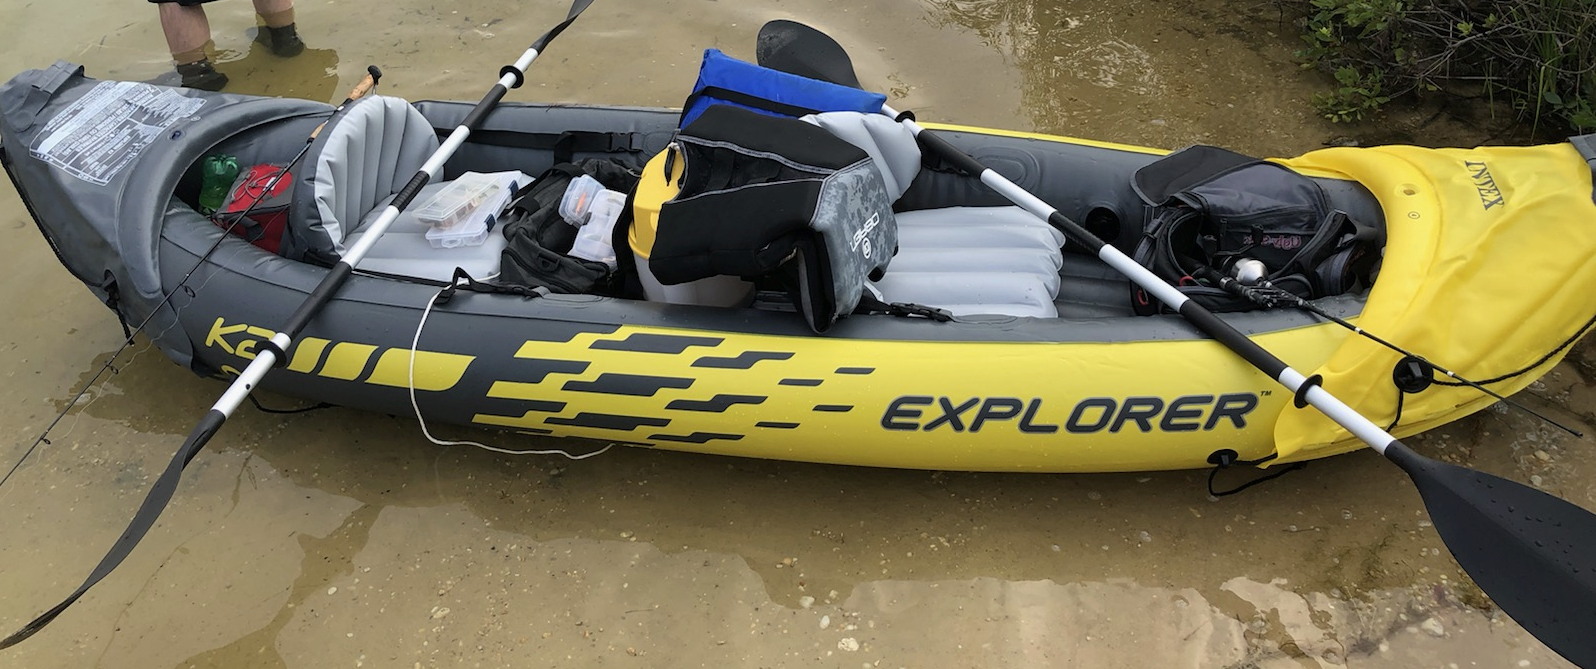 kayak 2.jpg